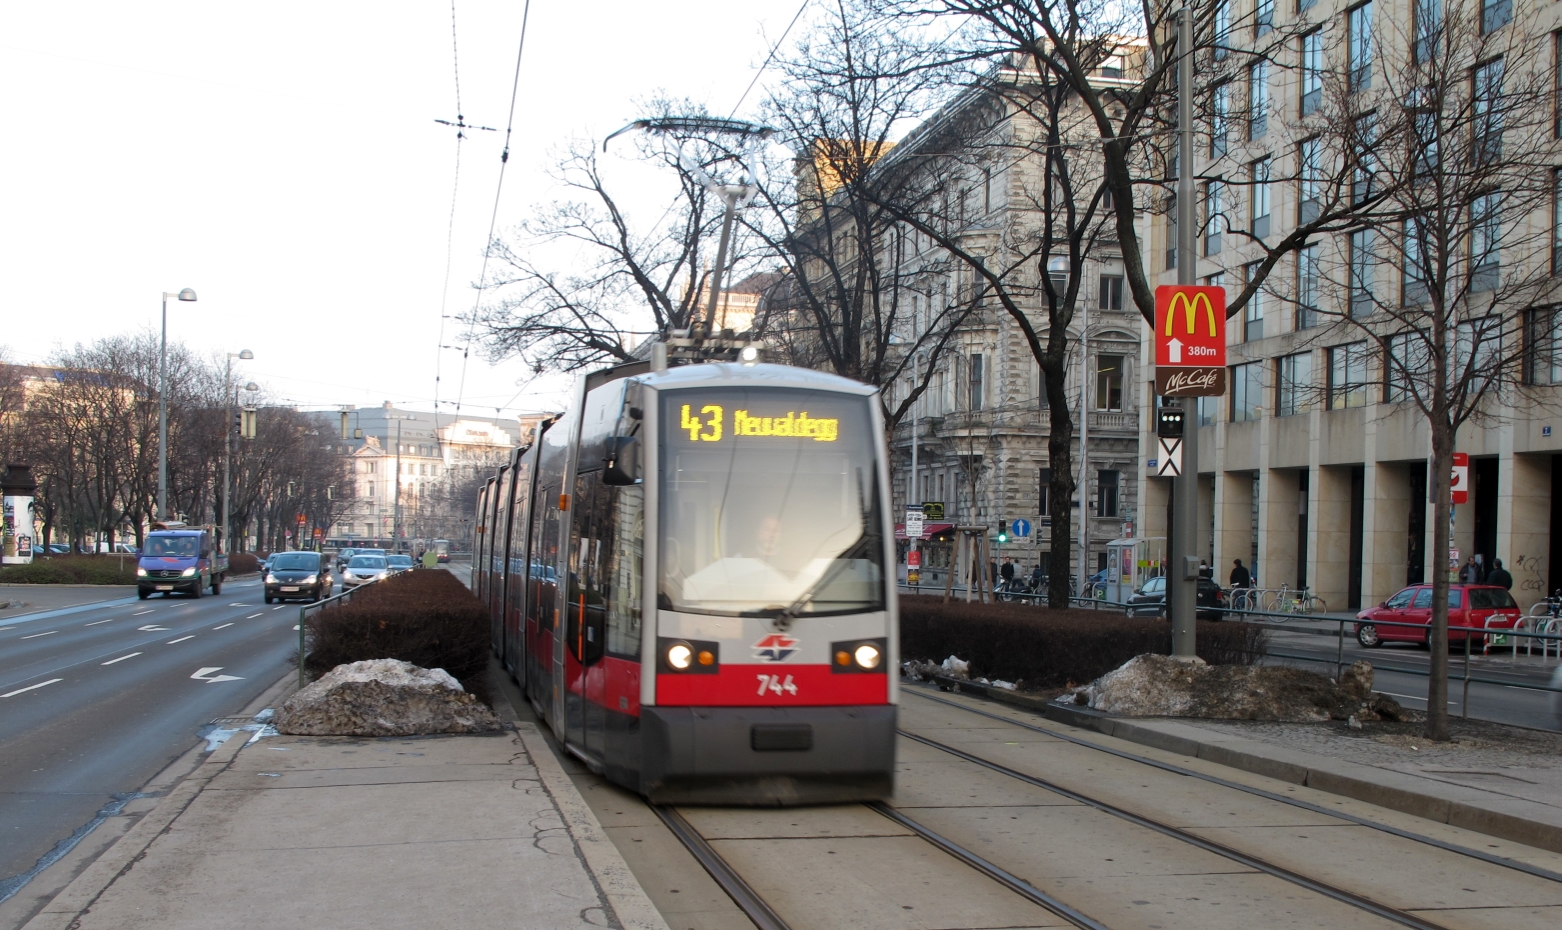 Zug der Linie 43 bei der Station Landesgerichtsstrasse in Fahrtrichtung Neuwaldegg.